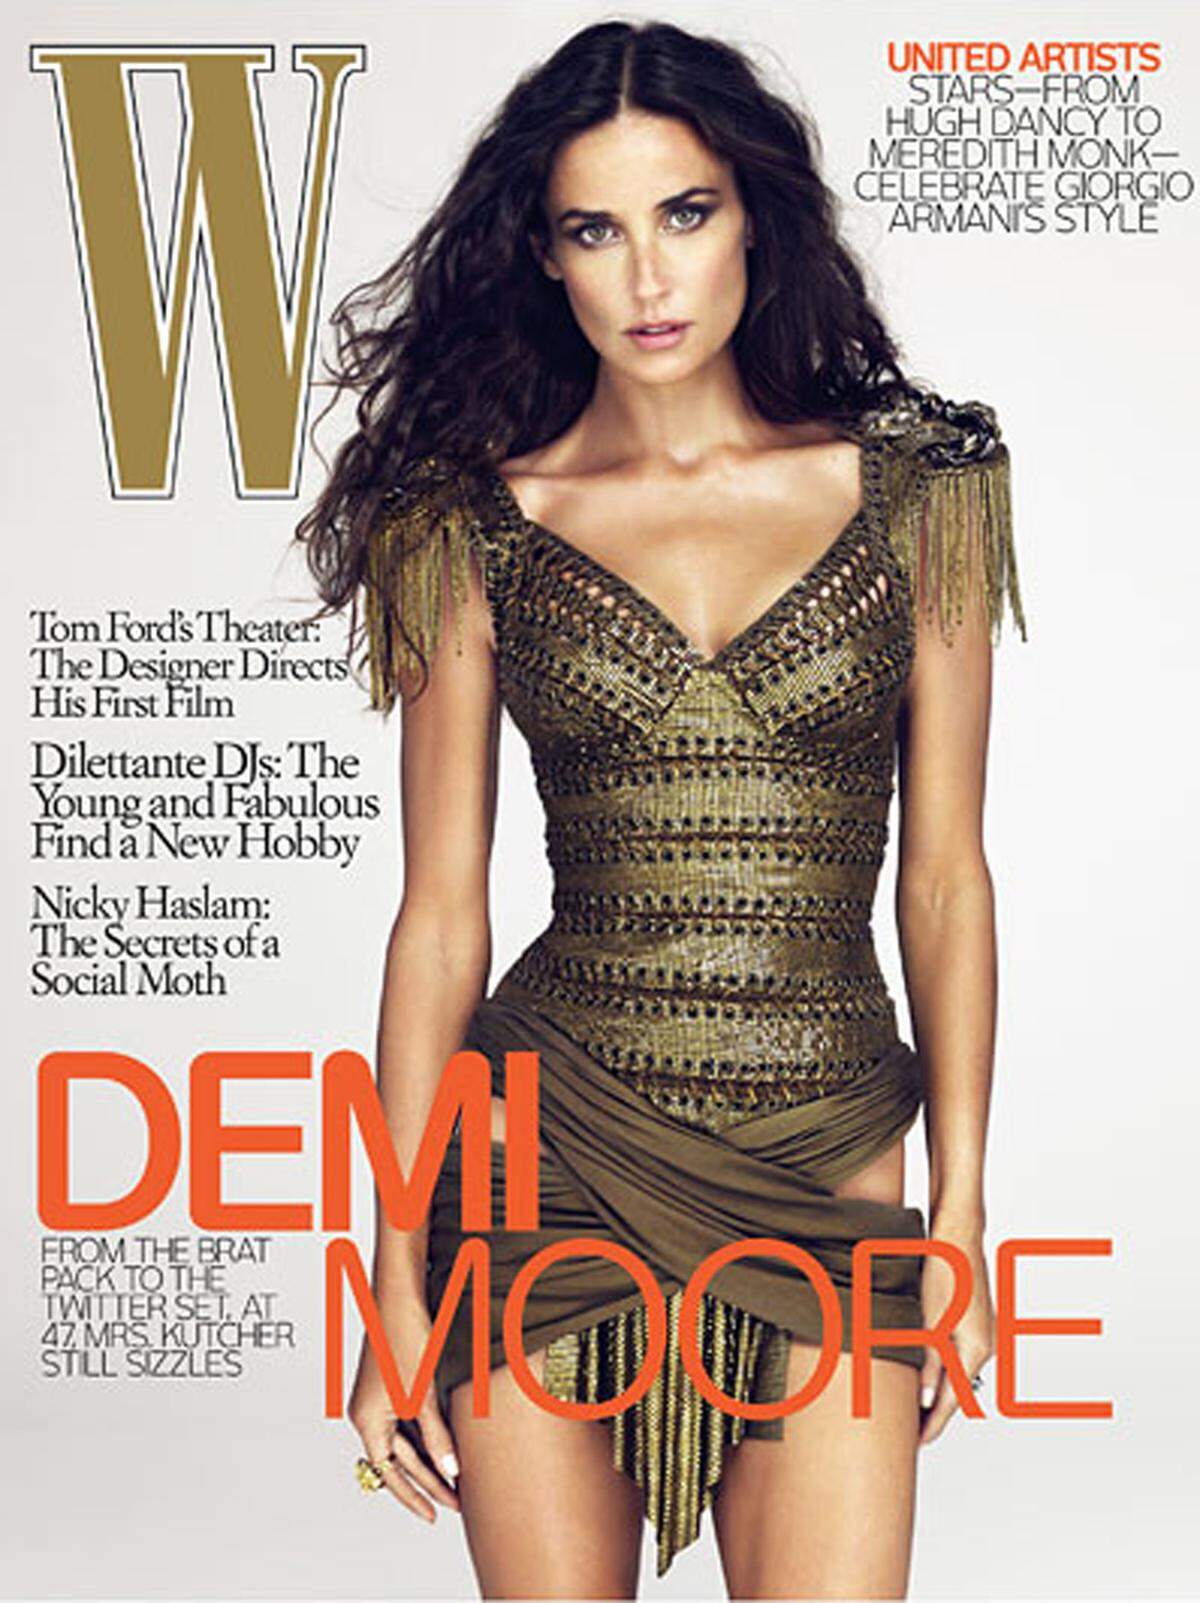 Mit extrem schlanker Taille zeigte sich Demi Moore 2009 am Cover des W-Magazins. Auch hier wurde mittels Photoshop ordentlich nachgeholfen.